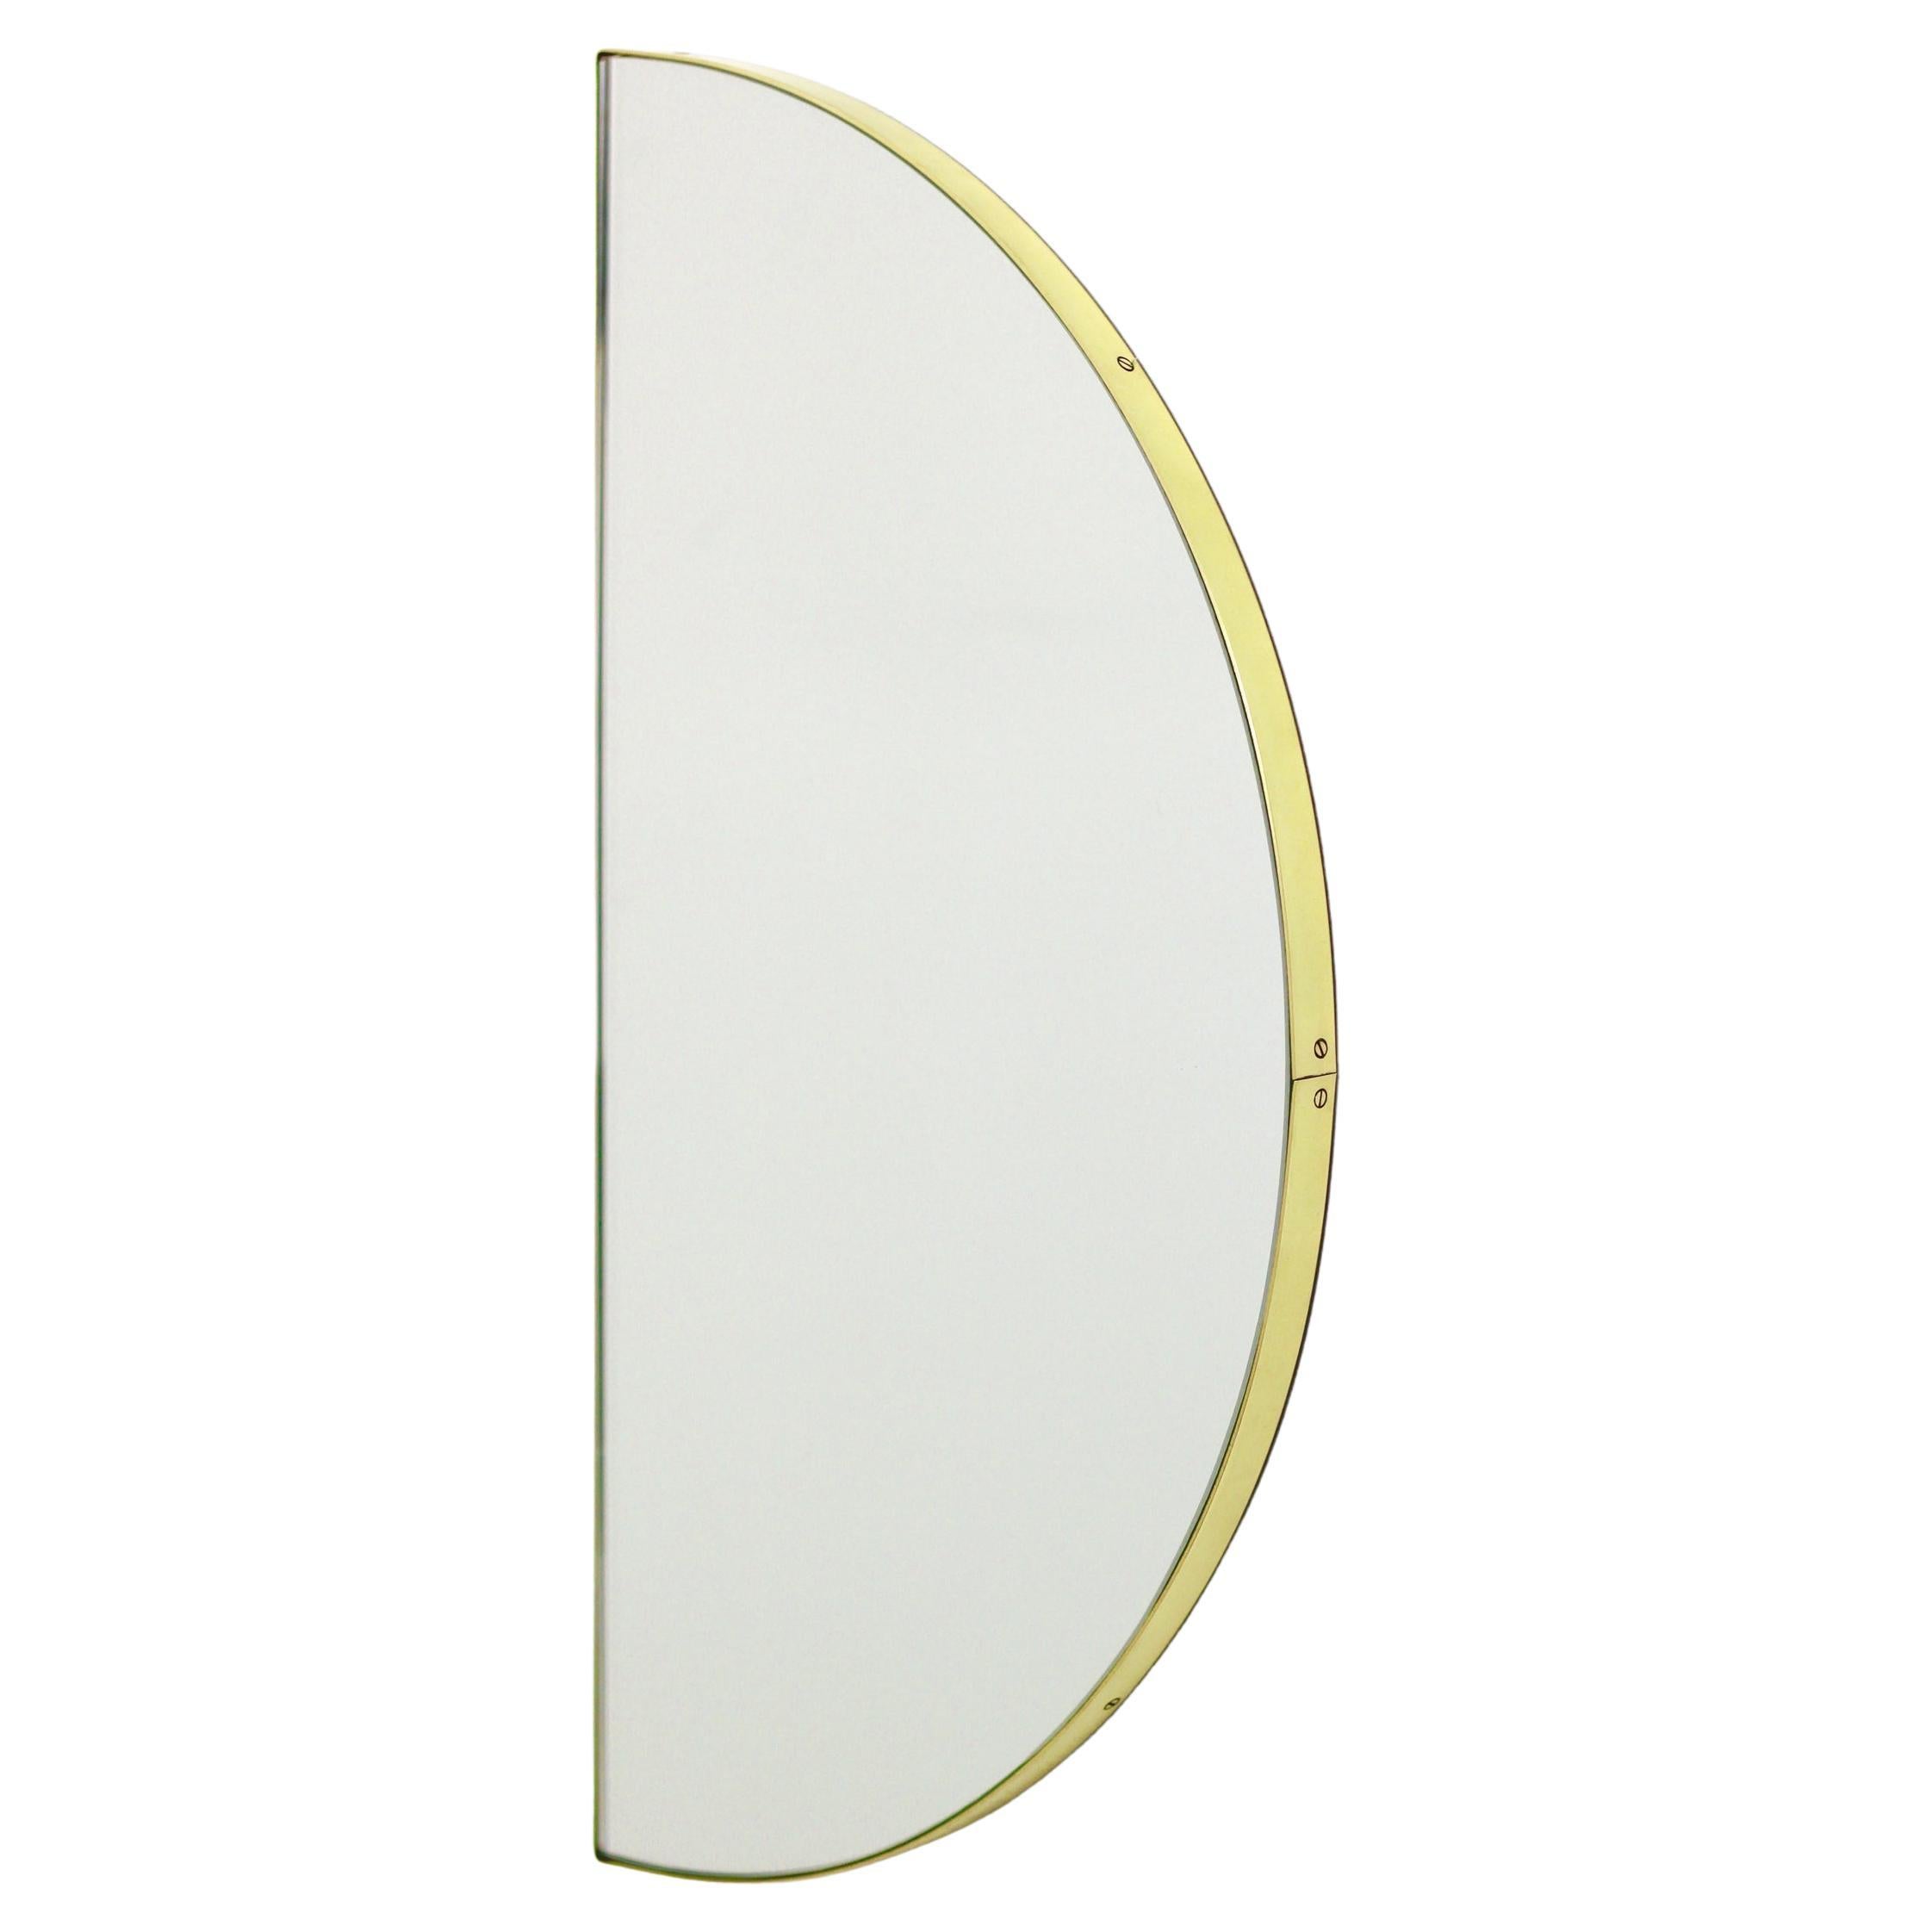 Luna, halber, runder, moderner Spiegel mit Messingrahmen, XL